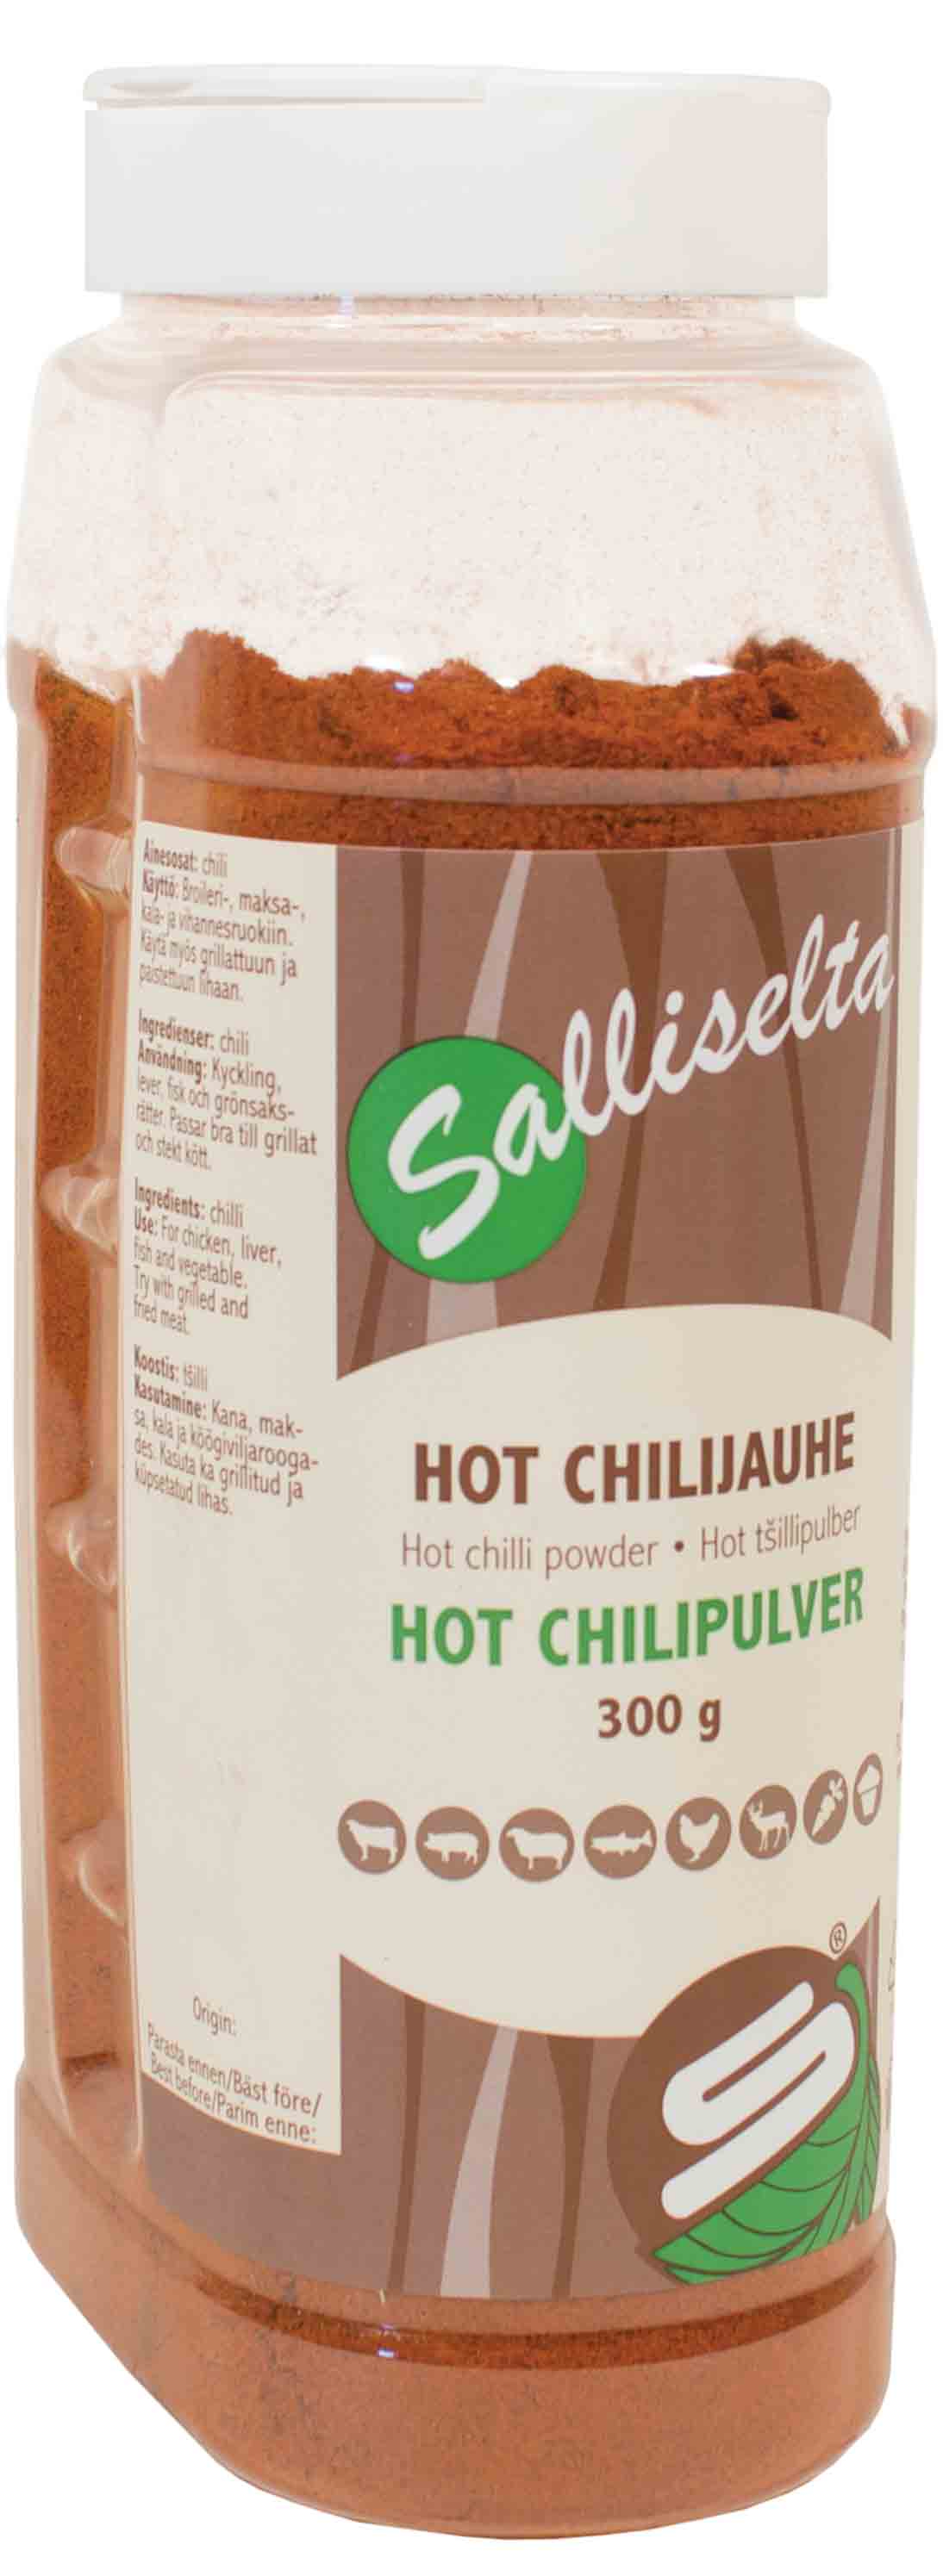 Chilipulver hot 300g